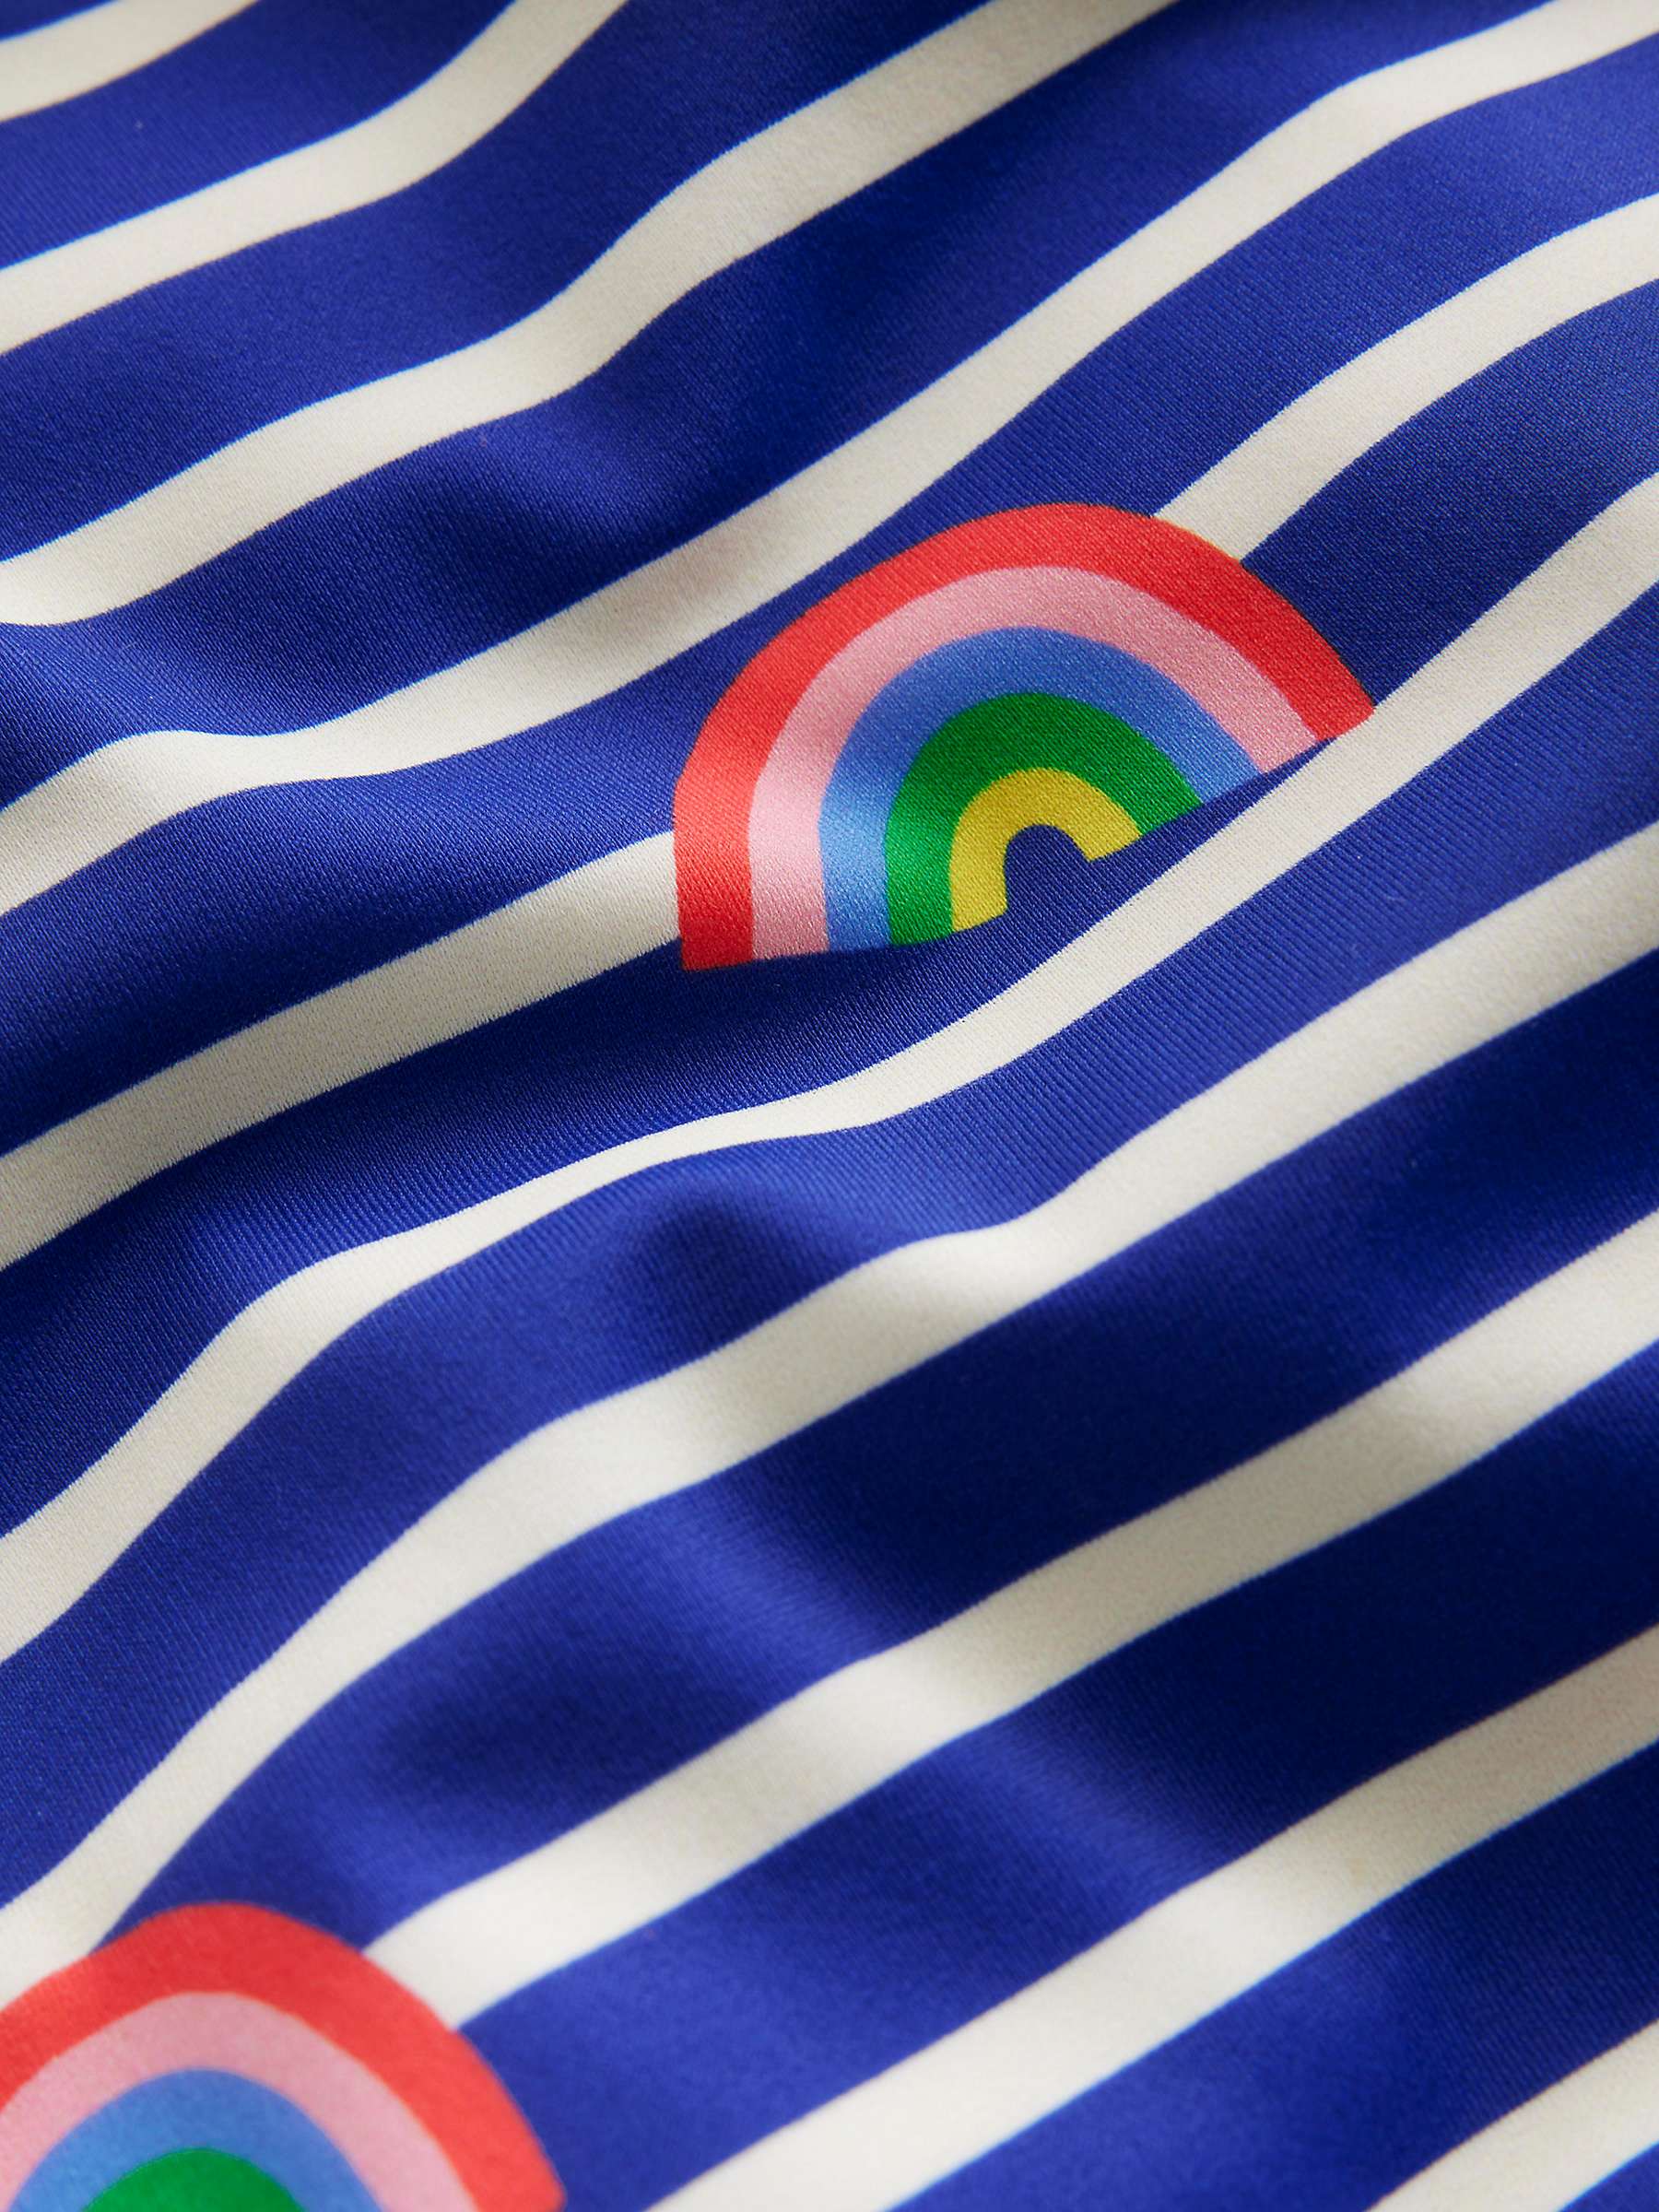 Buy Mini Boden Kids' Stripe & Rainbow Print Cross Back Swimsuit, Blue Breton Online at johnlewis.com